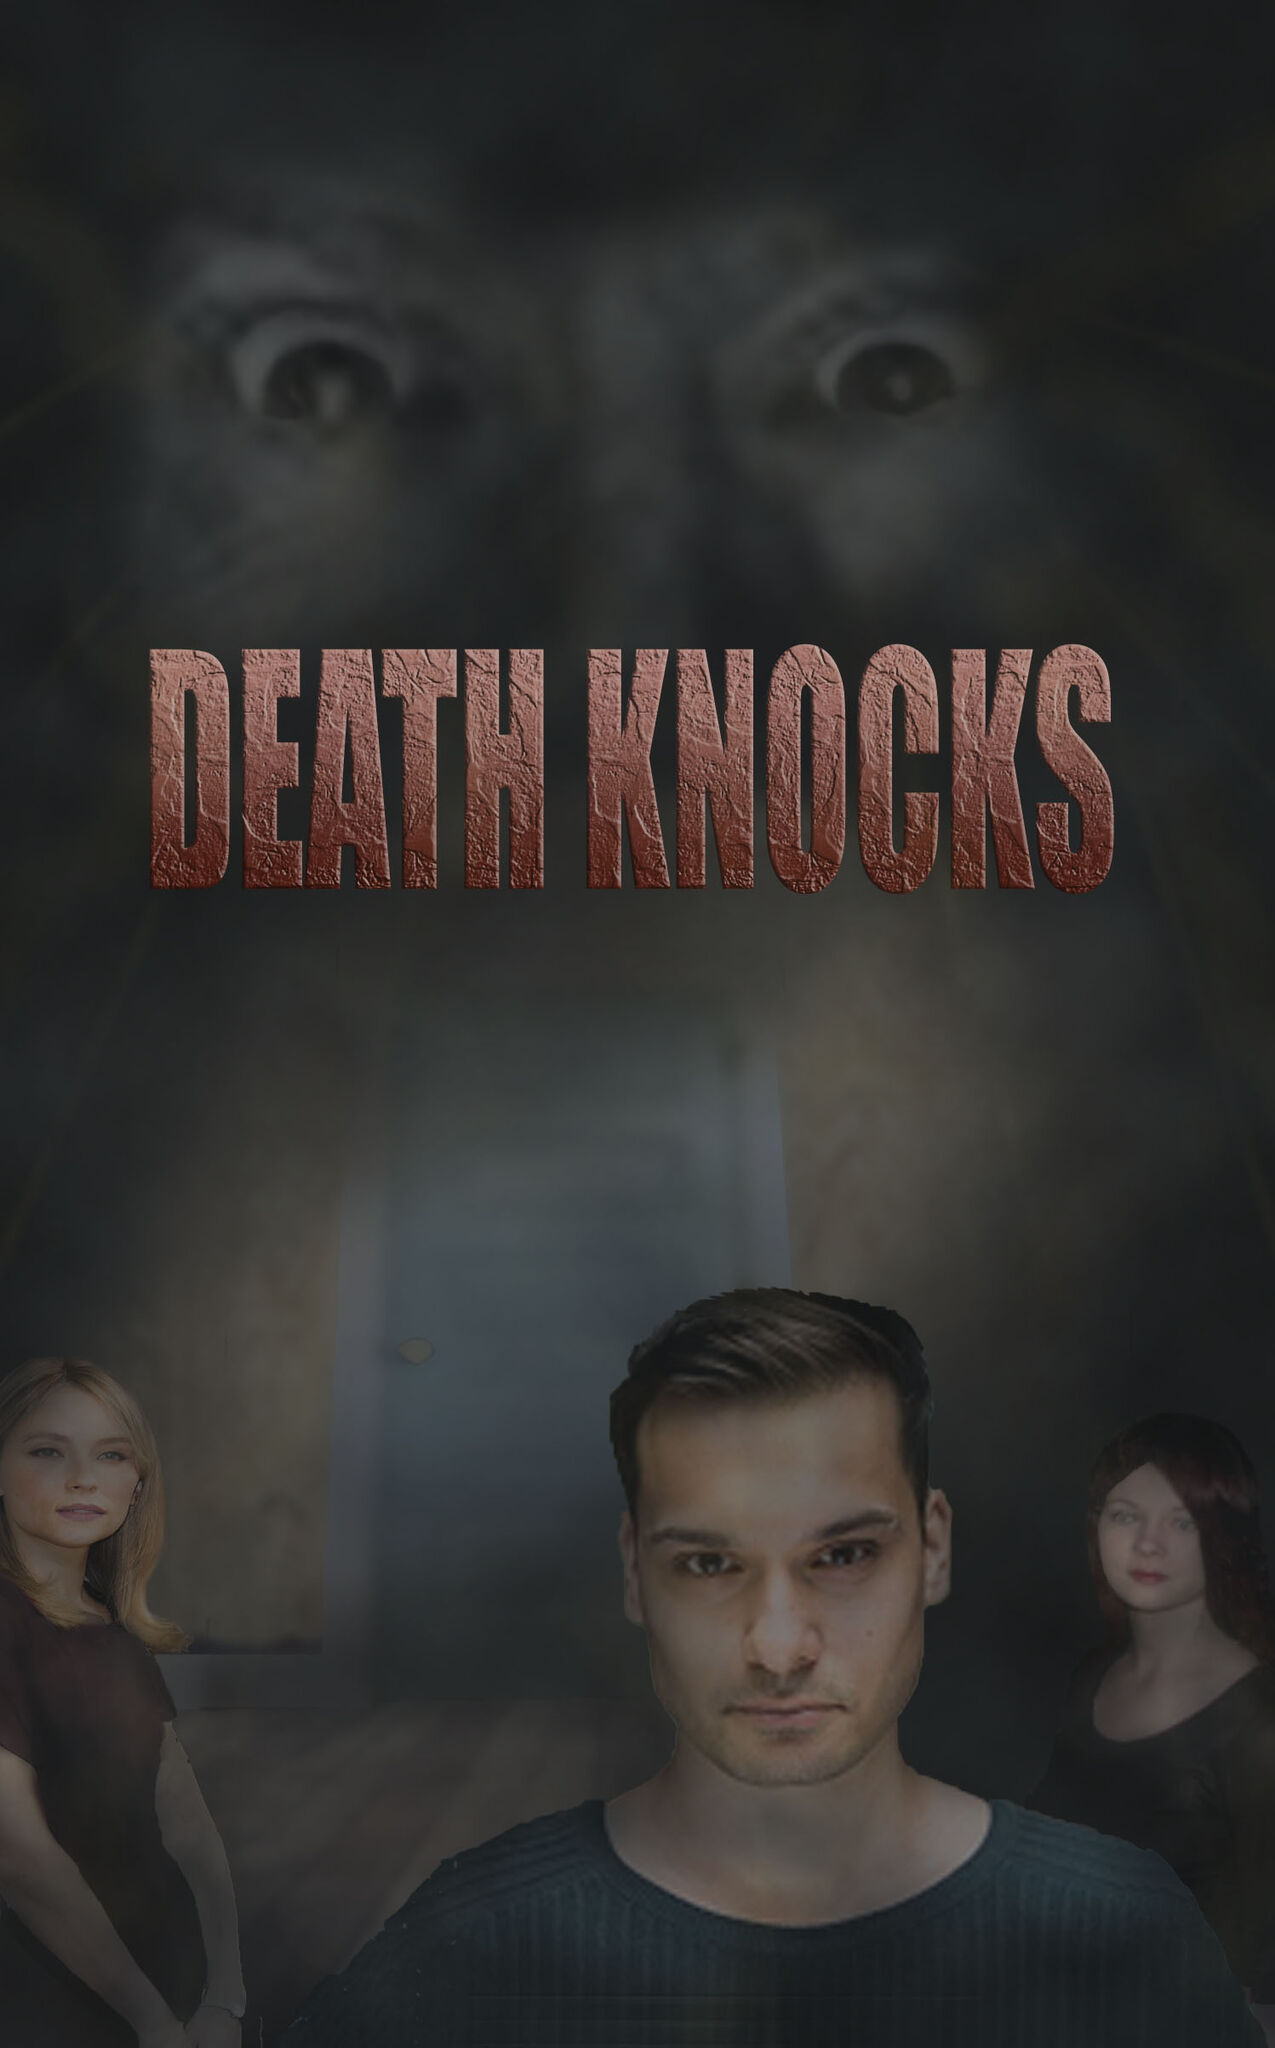 DEATH KNOCKS